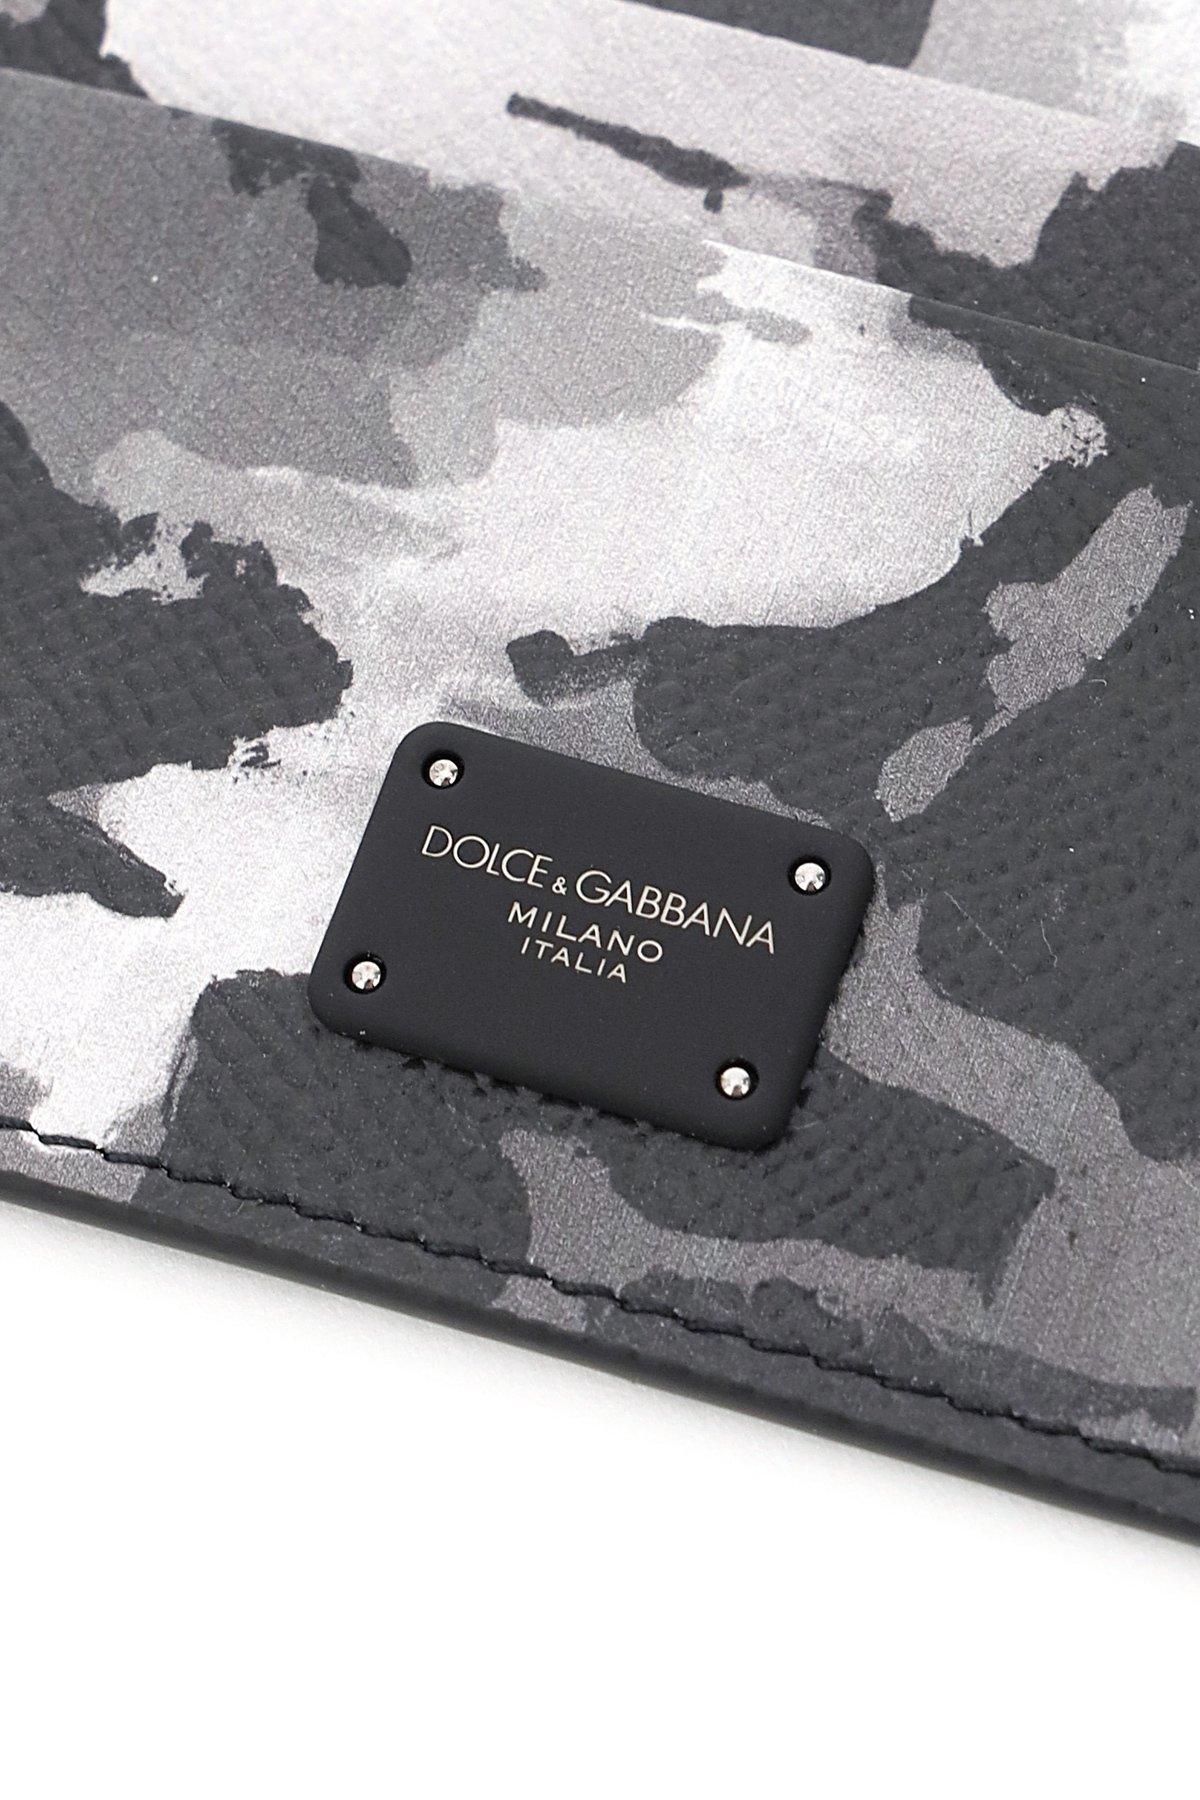 Dolce & Gabbana Leather Dolce & Gabbana Camouflage Print Card 